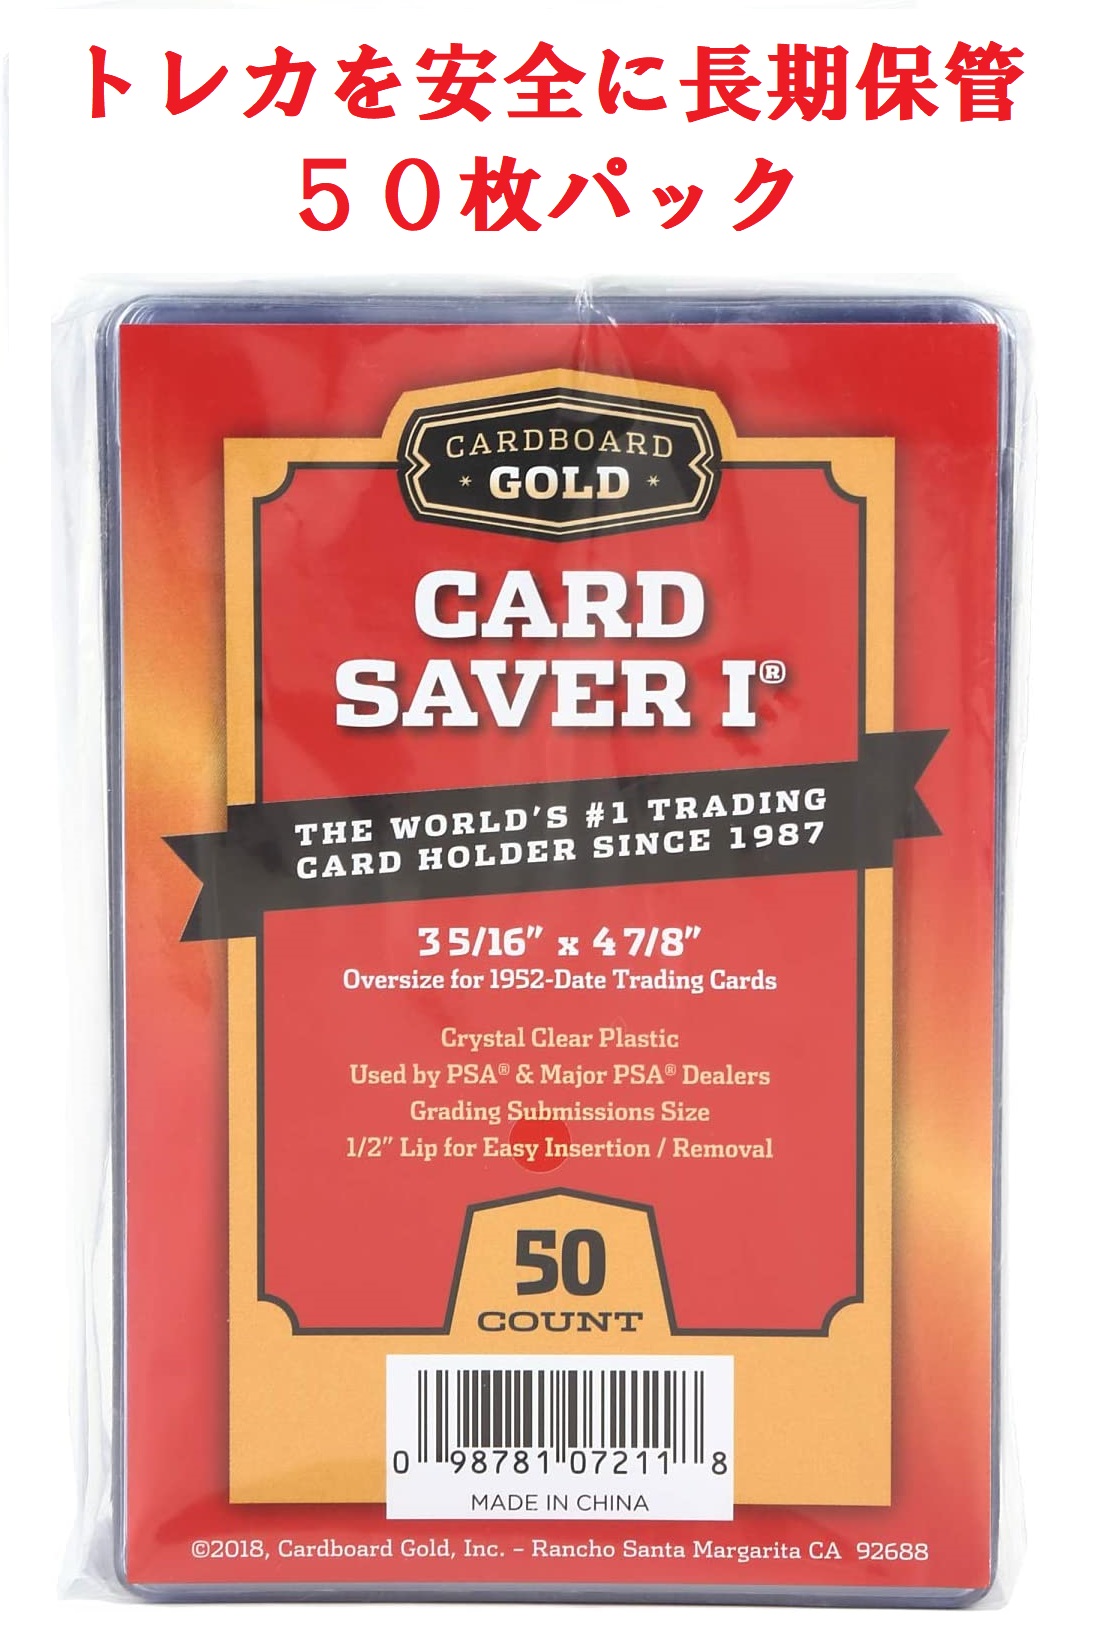 カードセーバー1 セミリジッド カードホルダーPSA BGSグレードカード提出用 50枚パック トレーディングカード保管 半硬質 透明 Cardboard Gold Card Saver